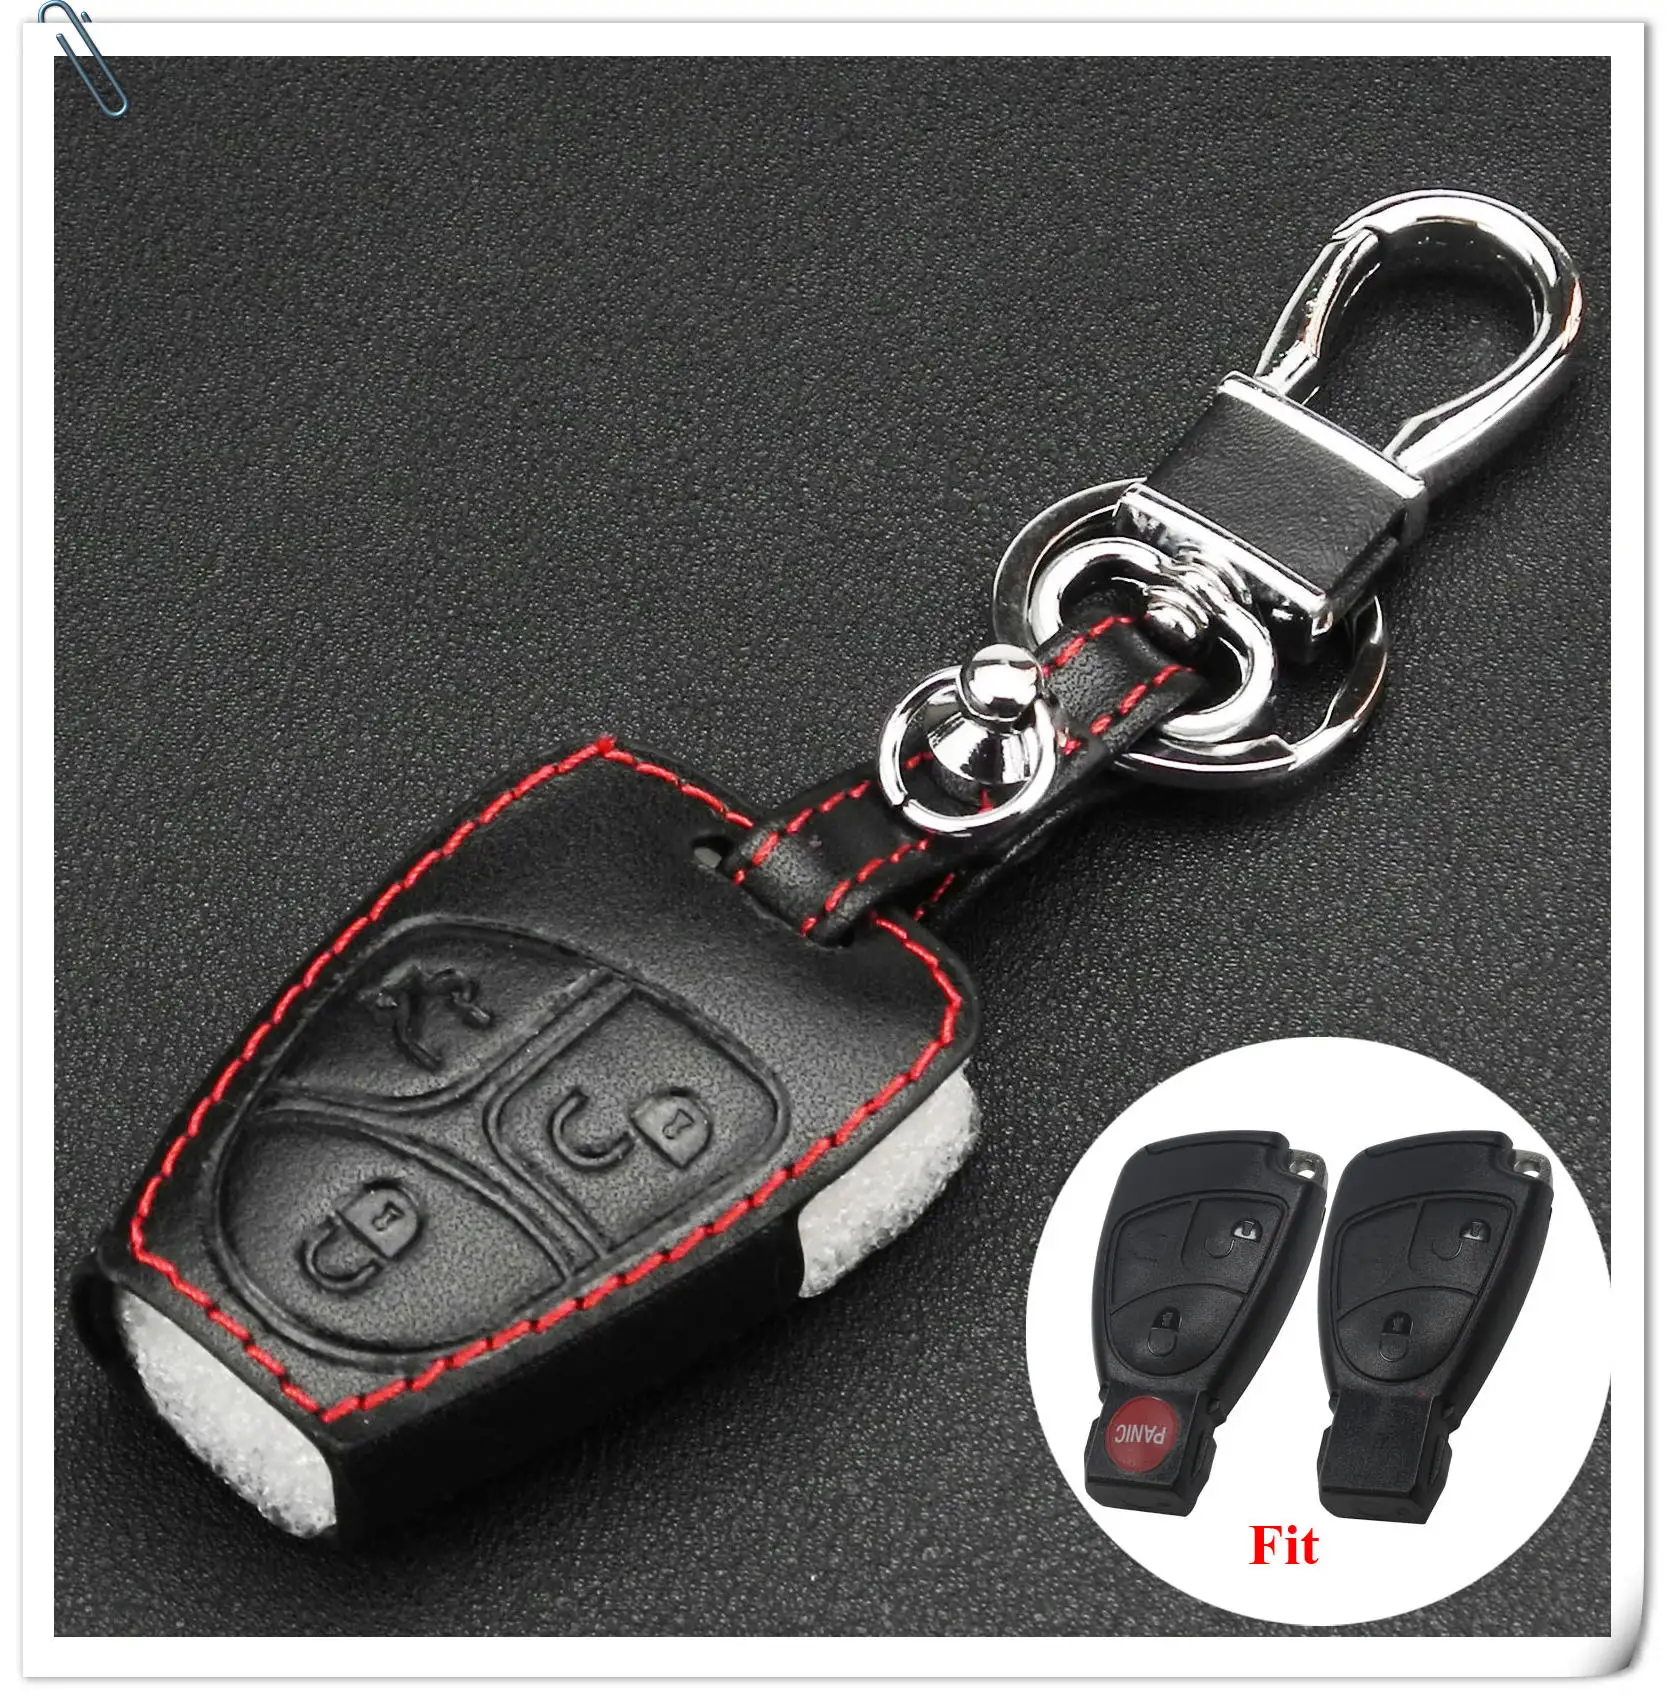 2 Button Remote Fob Bag Holder Leather Car Key Cover Case For Mercedes Benz SLK